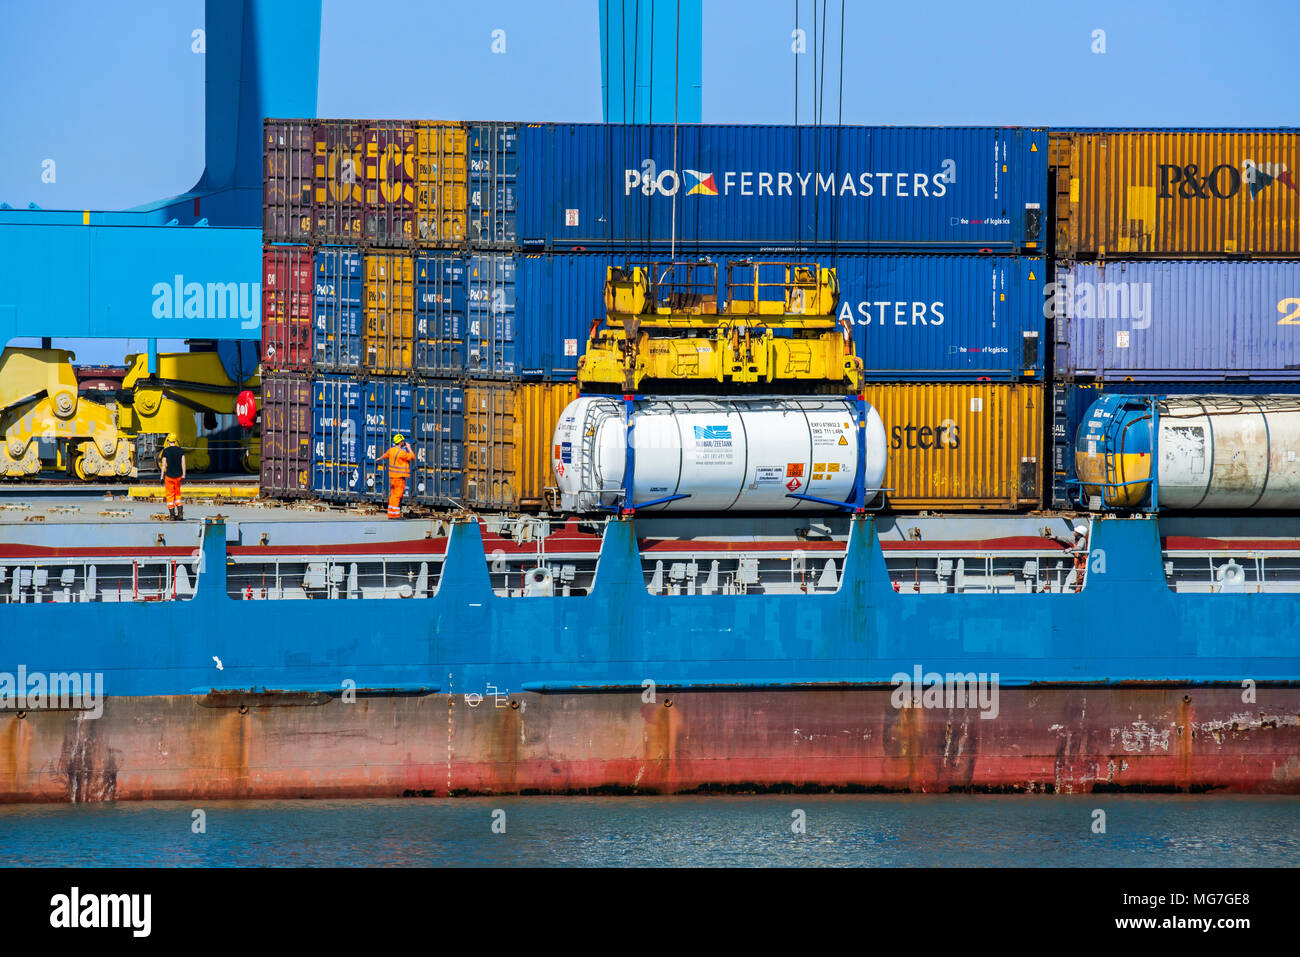 Les dockers de grue d'exploitation / portainer/ grue à portique dans le port de Zeebrugge / Zeebruges le long de la côte de la mer du Nord, Flandre orientale, Belgique Banque D'Images